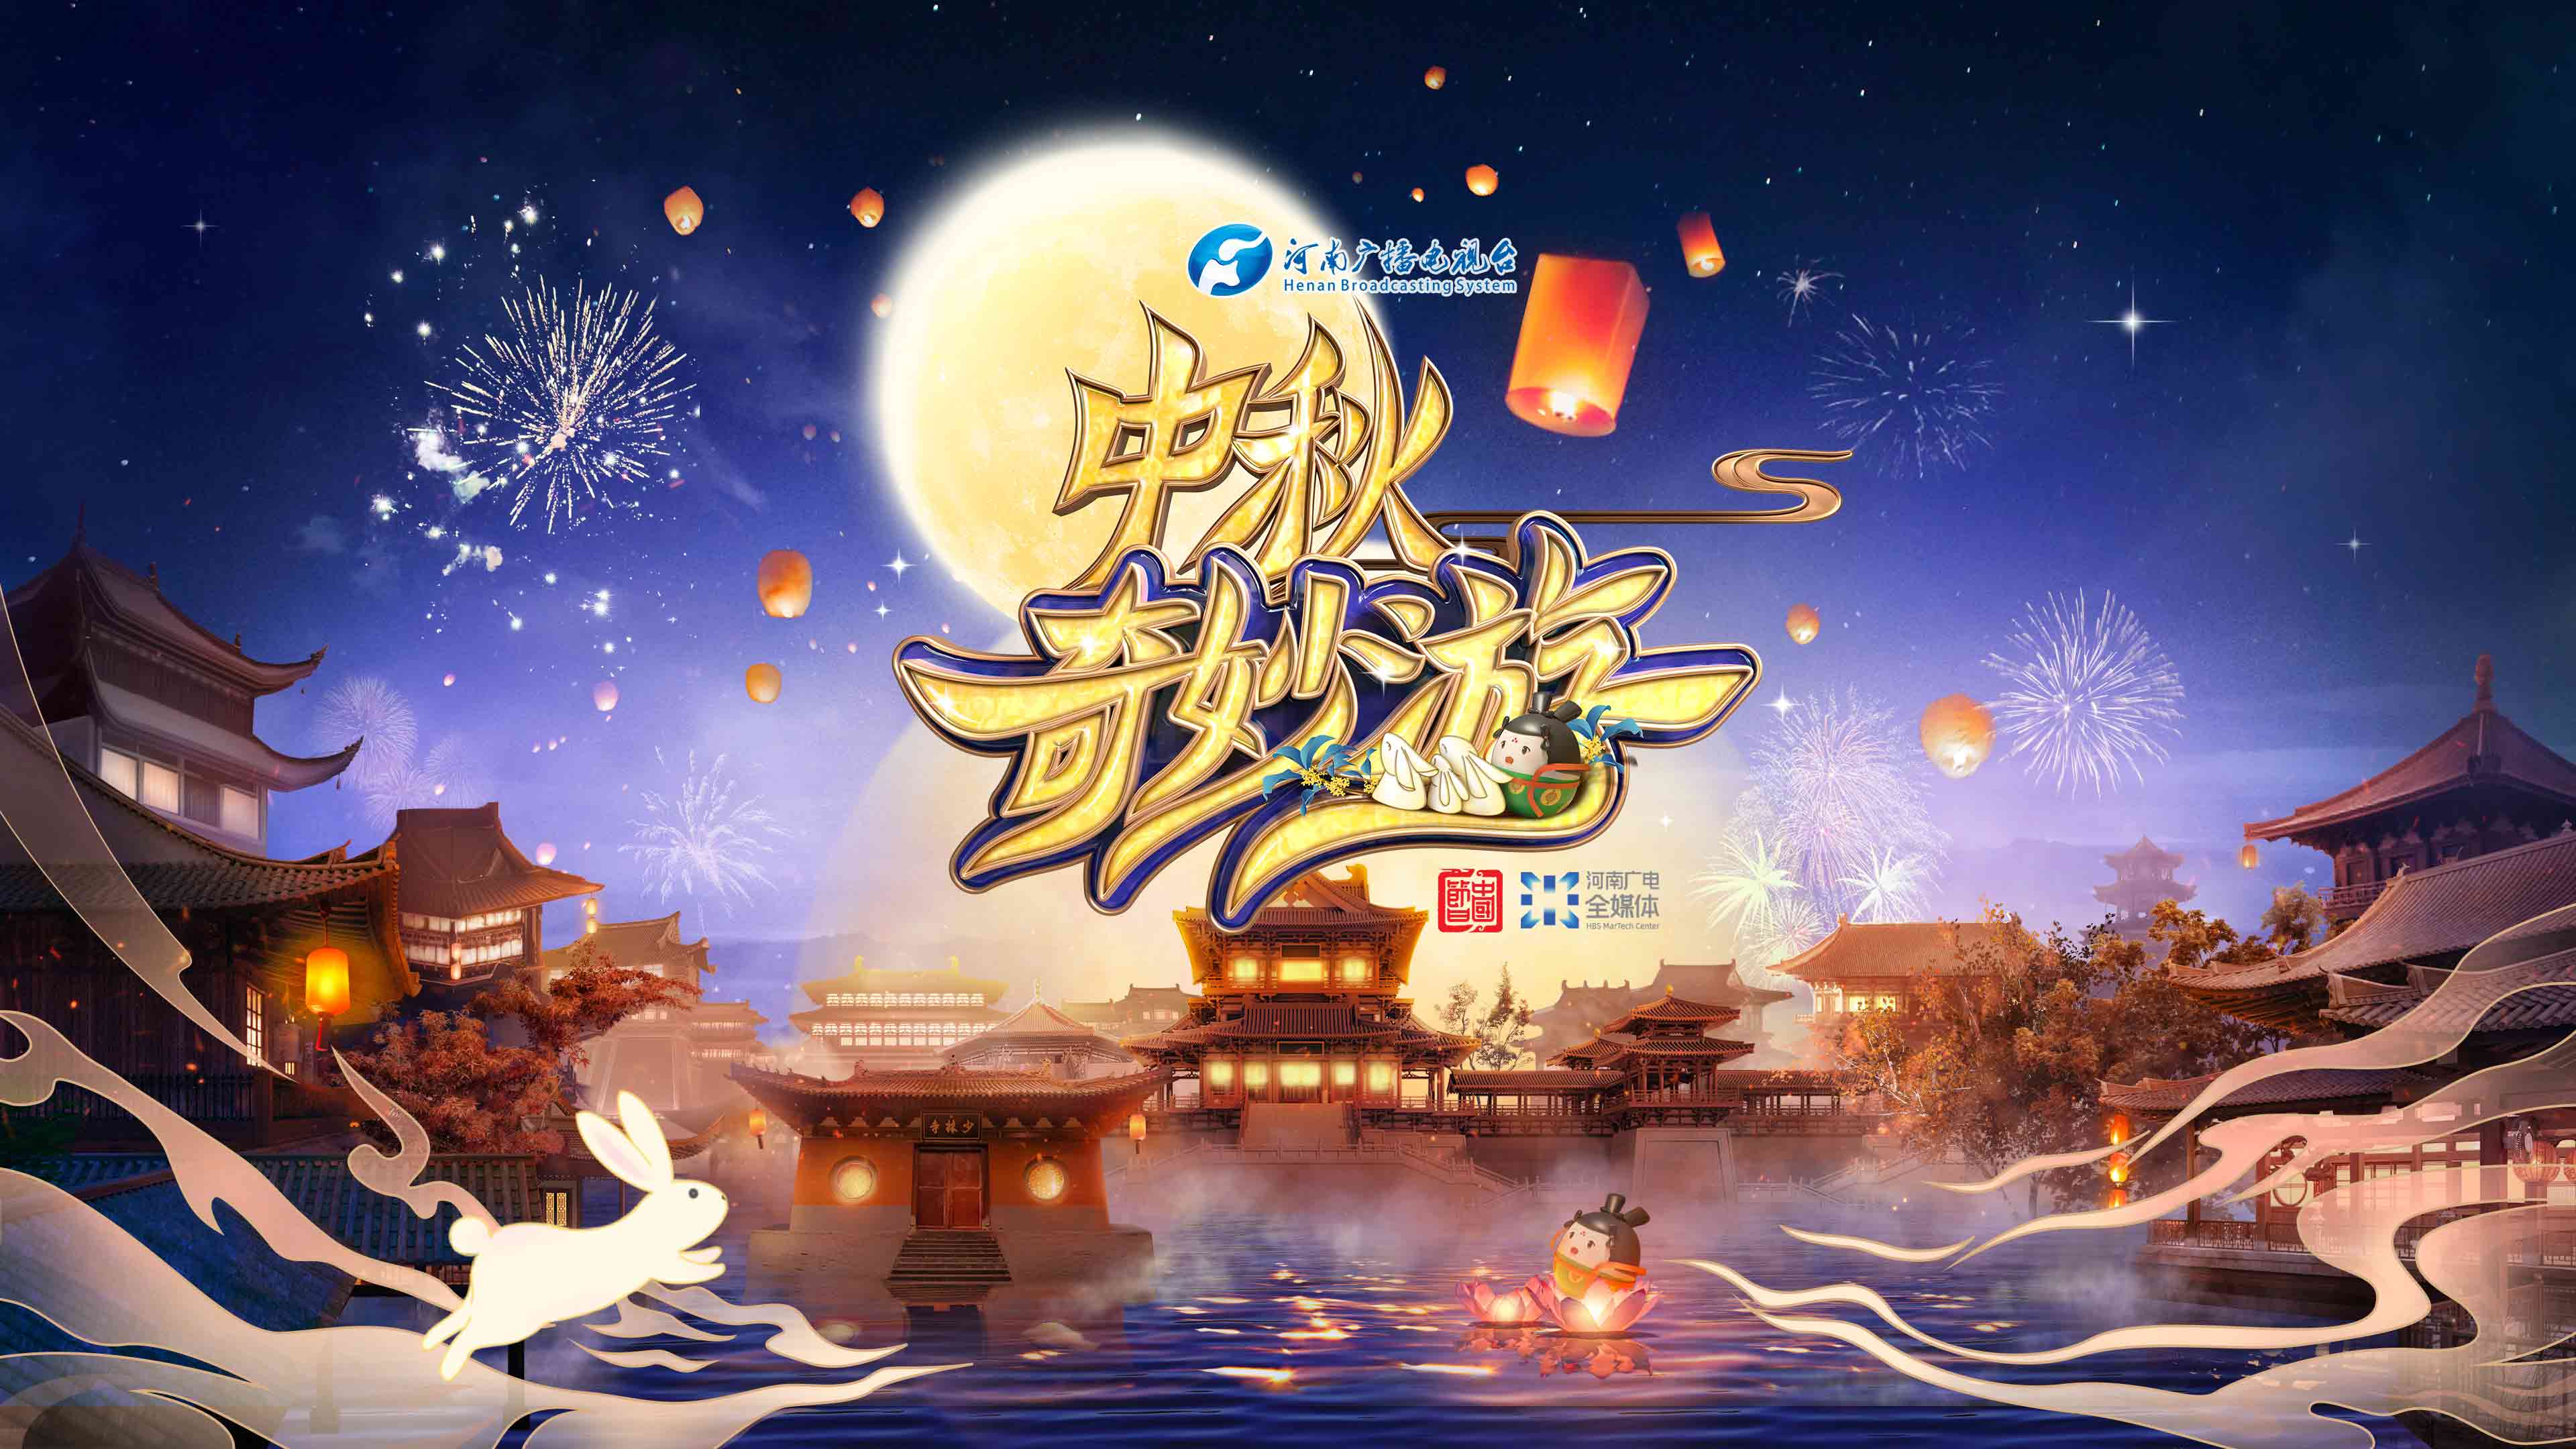 “中國節日”系列節目2021季